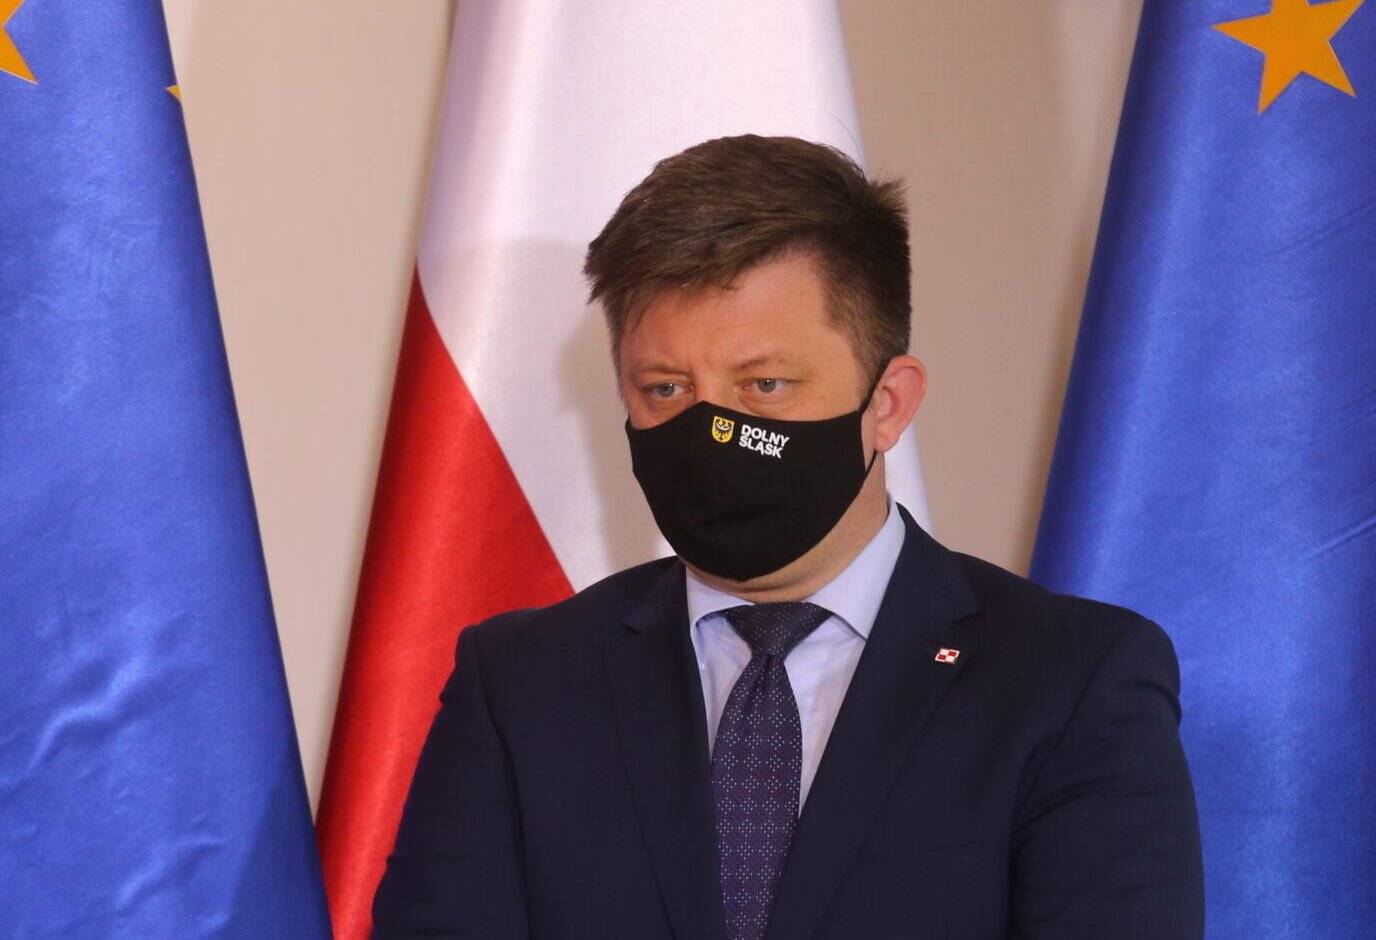 Michał Dworczyk w maseczce na twarzy na tle flag polskiej i unijnej